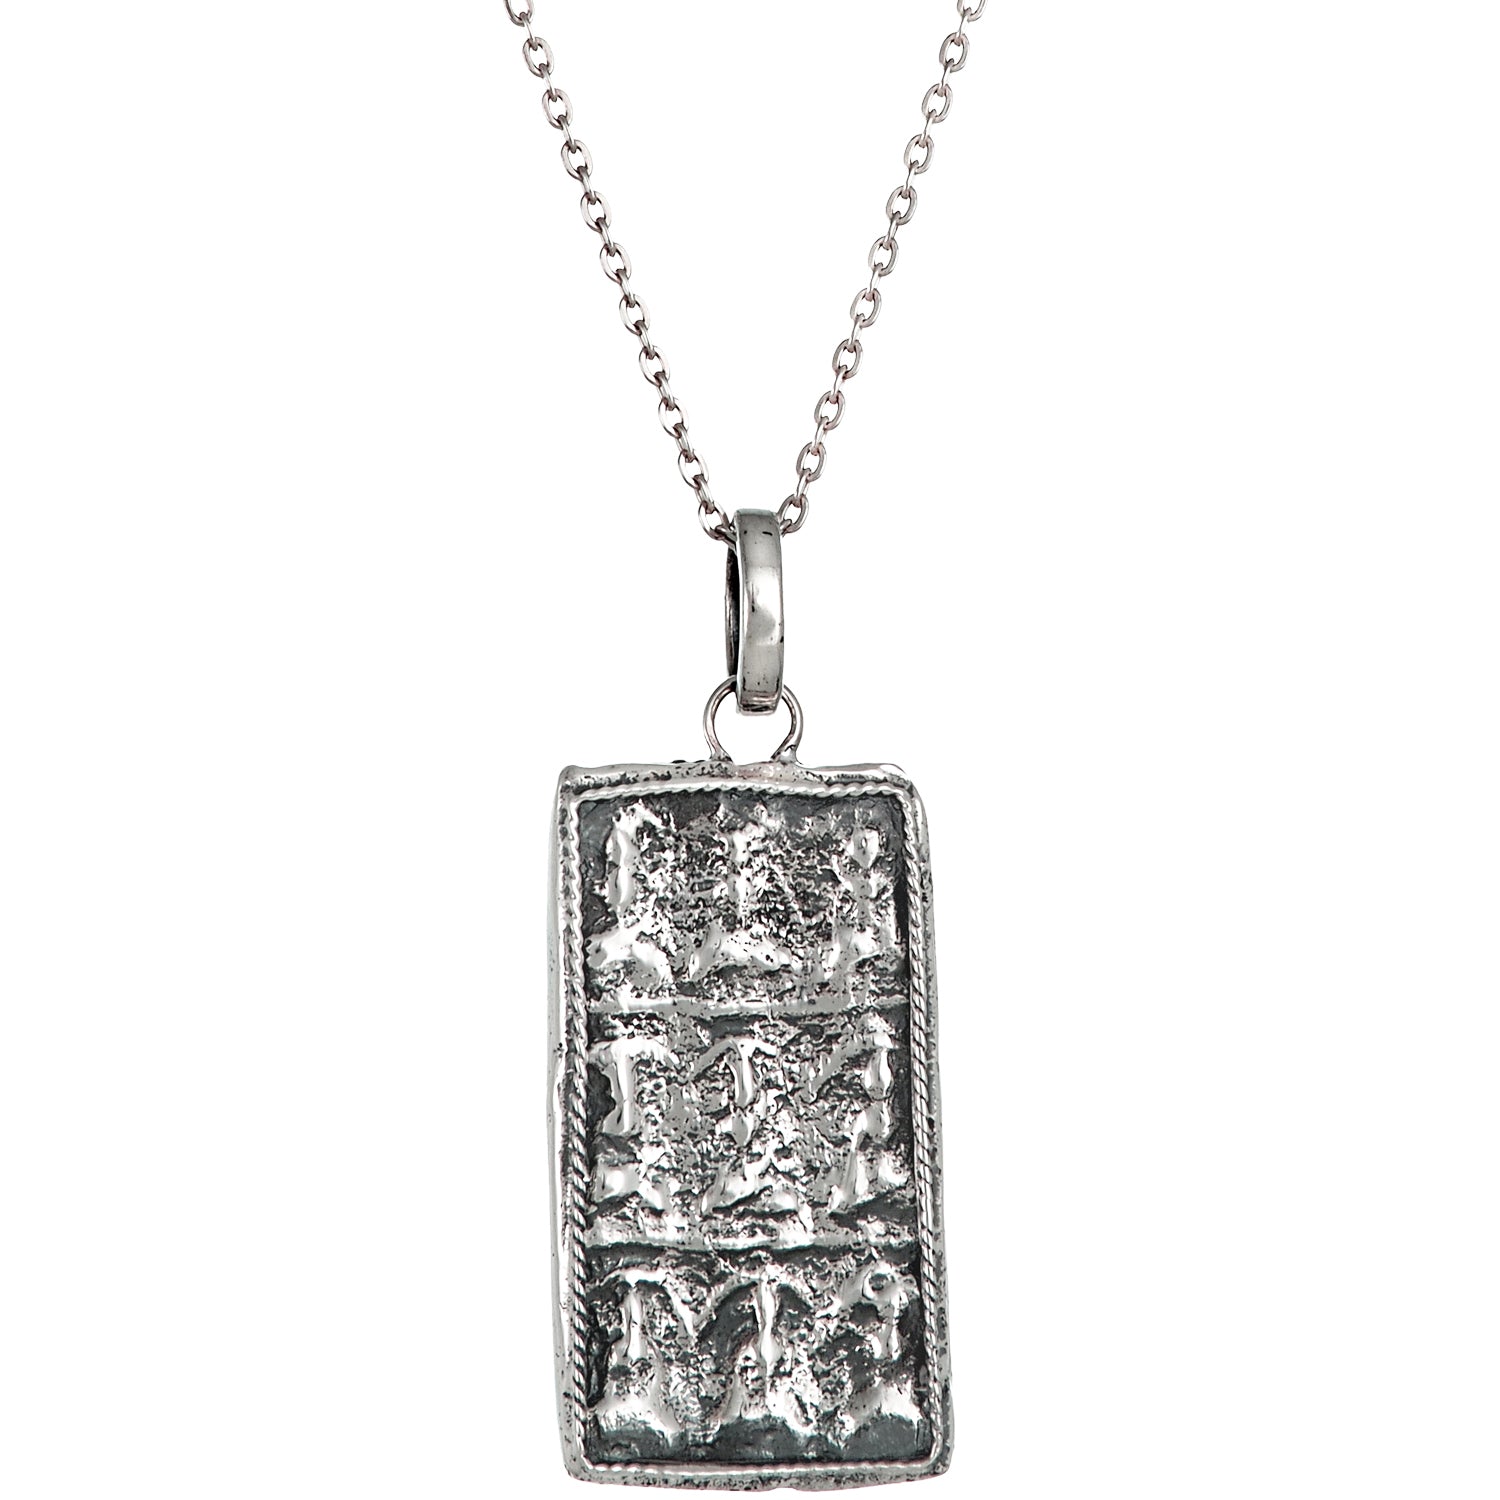 Buddha Ornament Anhänger in Sterling Silber mit geschwärzten Partien von ETERNAL BLISS - Spiritueller Schmuck